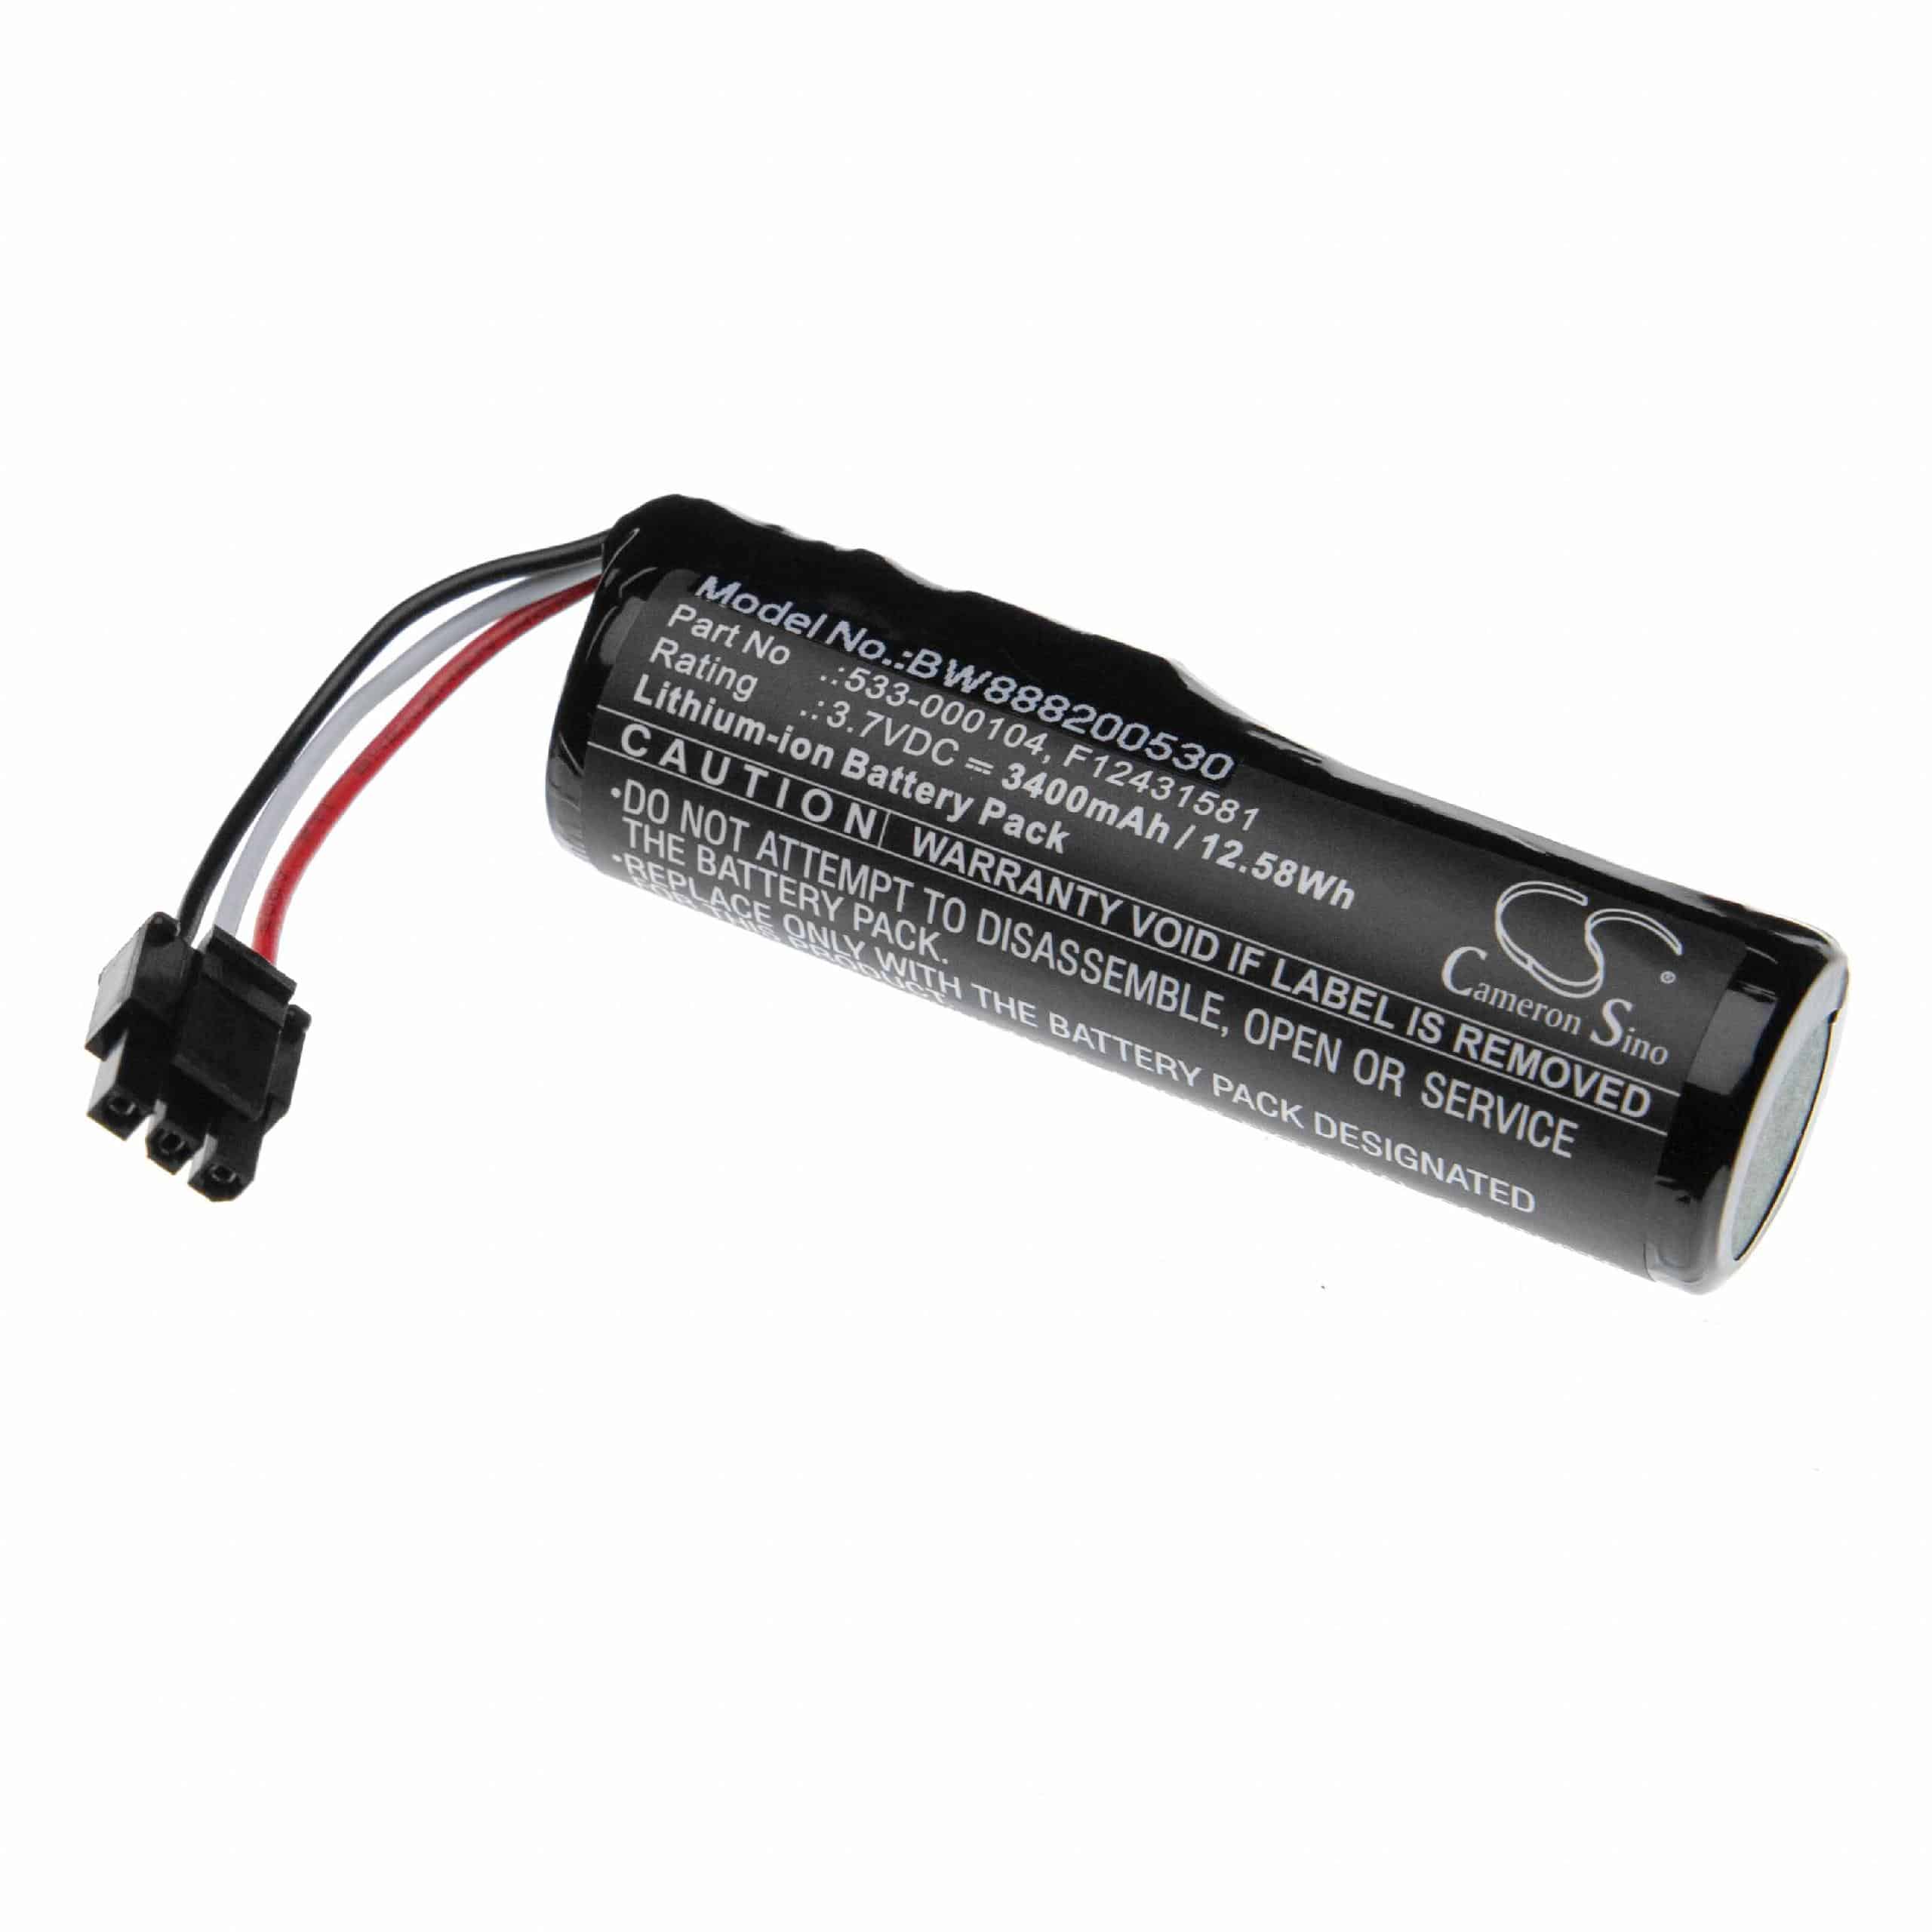 Batterie remplace Logitech F12431581, 533-000104, 533-000138 pour enceinte Logitech - 3400mAh 3,7V Li-ion